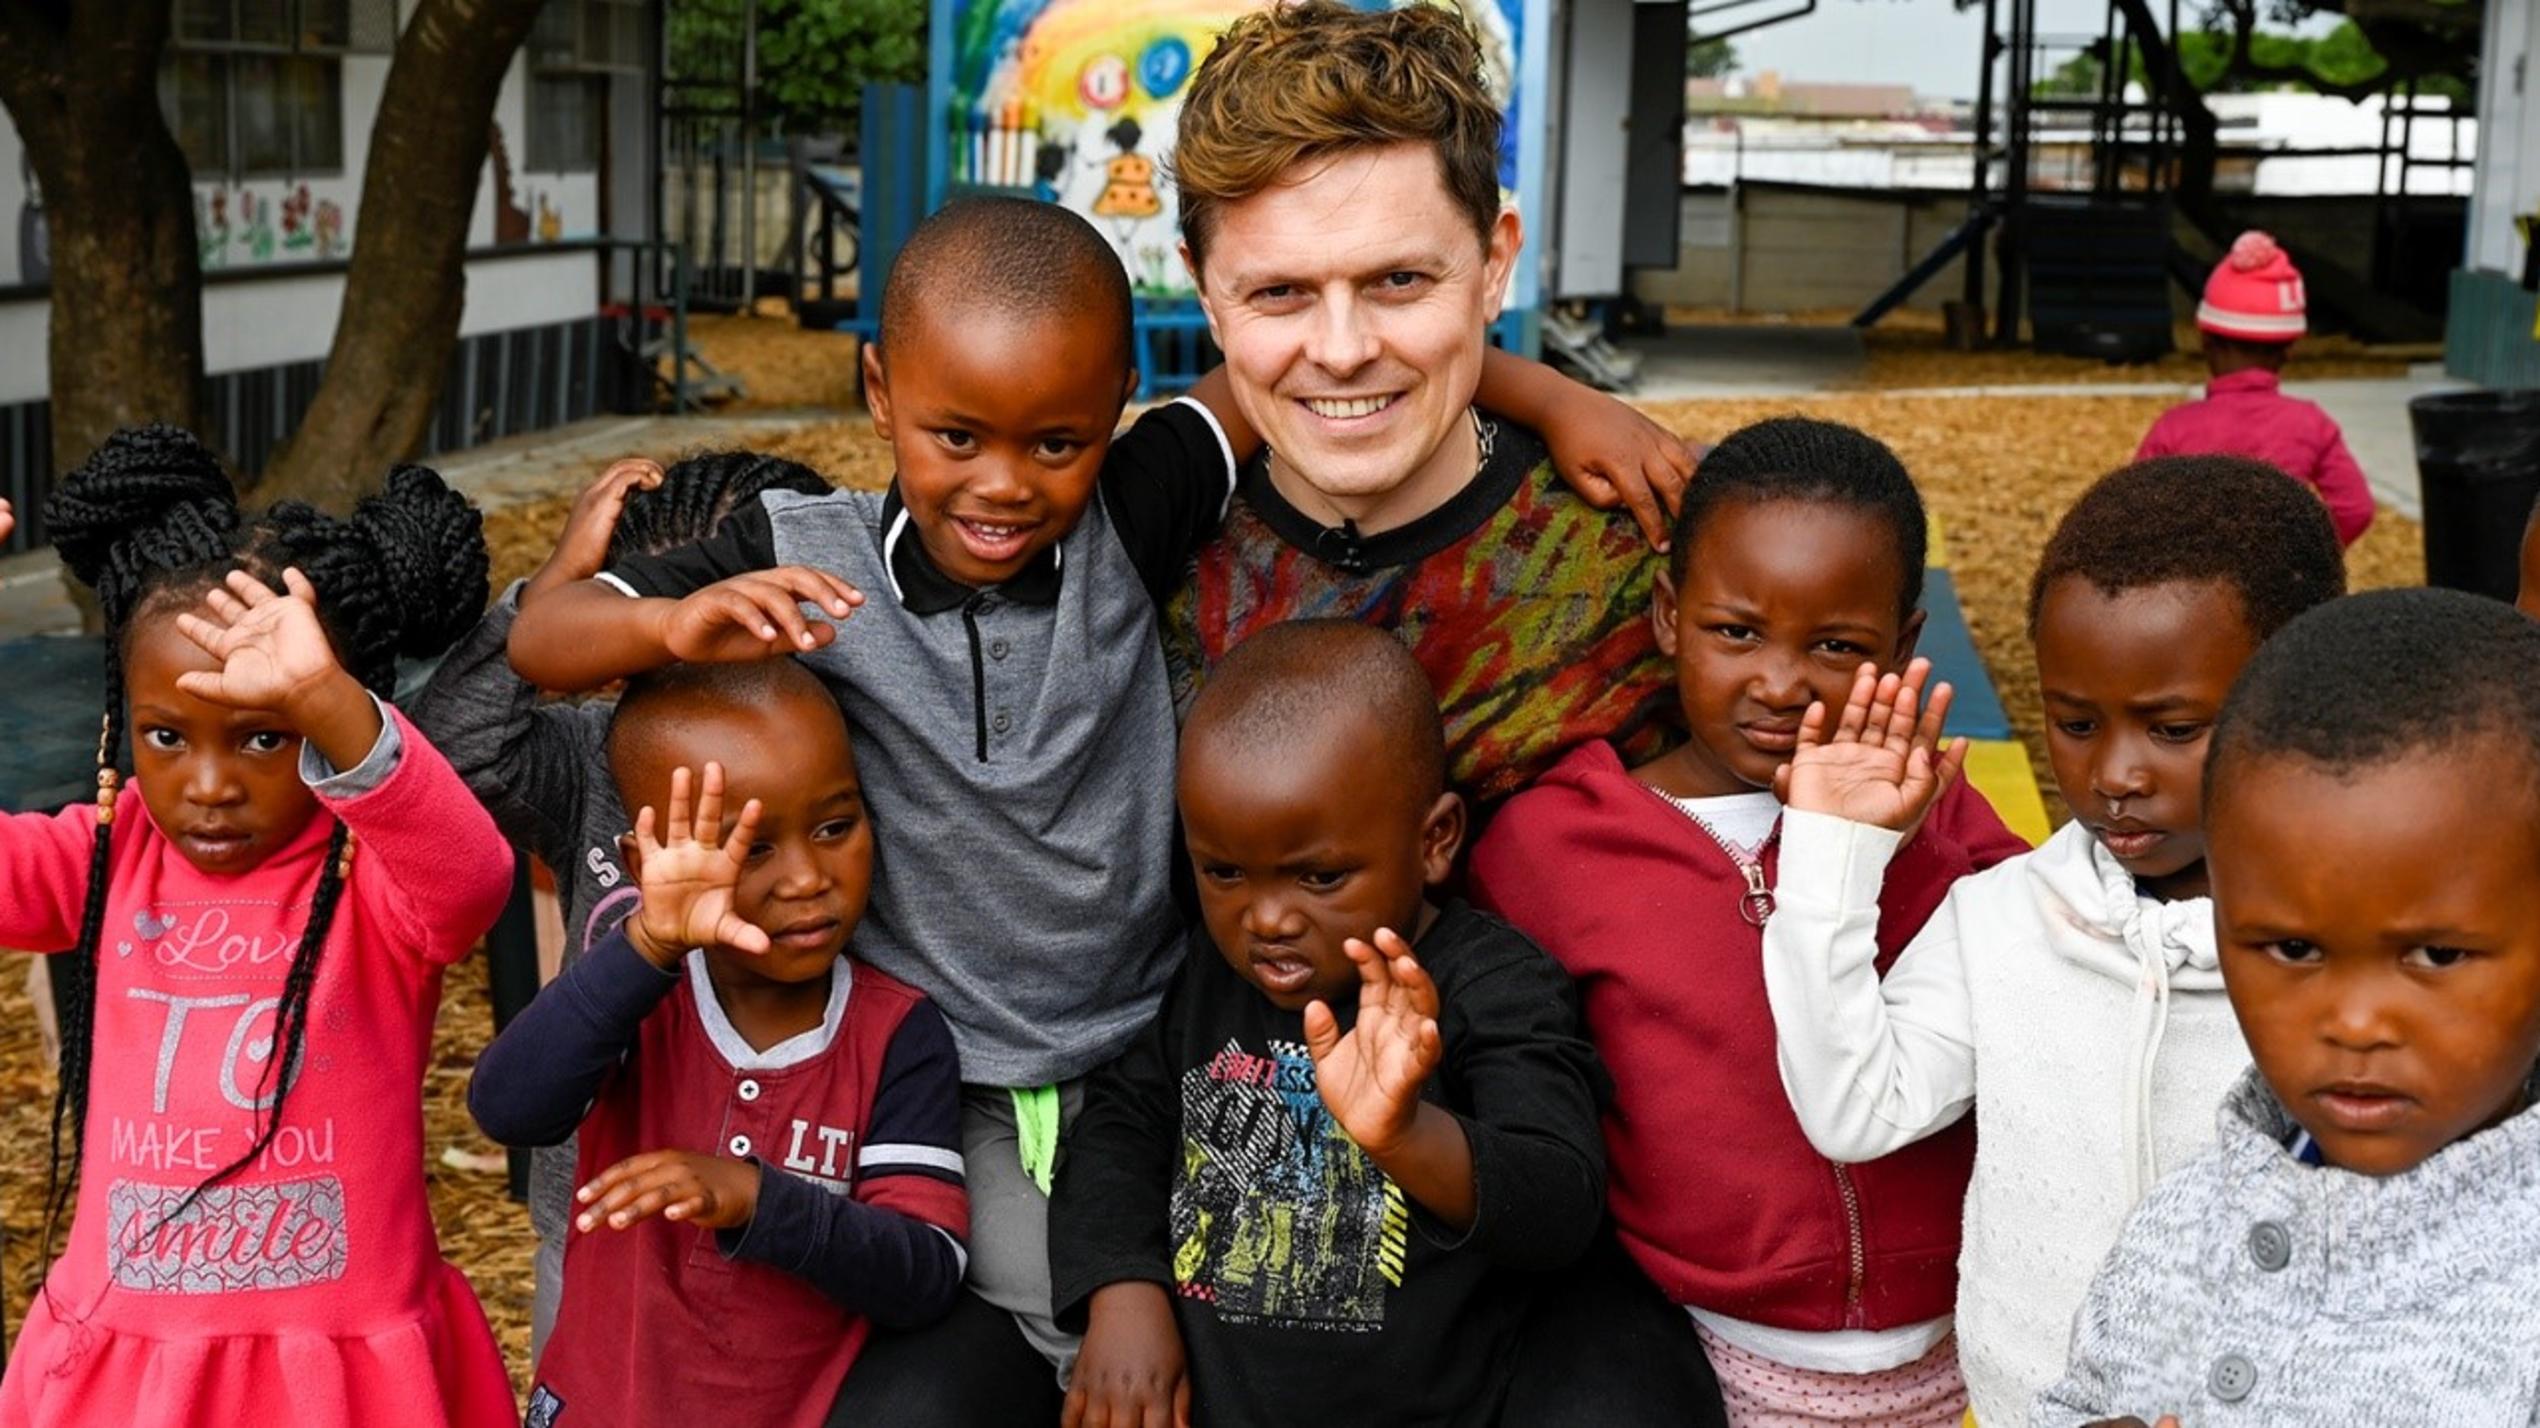 Michael Patrick Kelly setzte sich 2020 als ehemaliger „Sing meinen Song“-Gastgeber für südafrikanische Familien in ärmlichen Verhältnissen ein.  